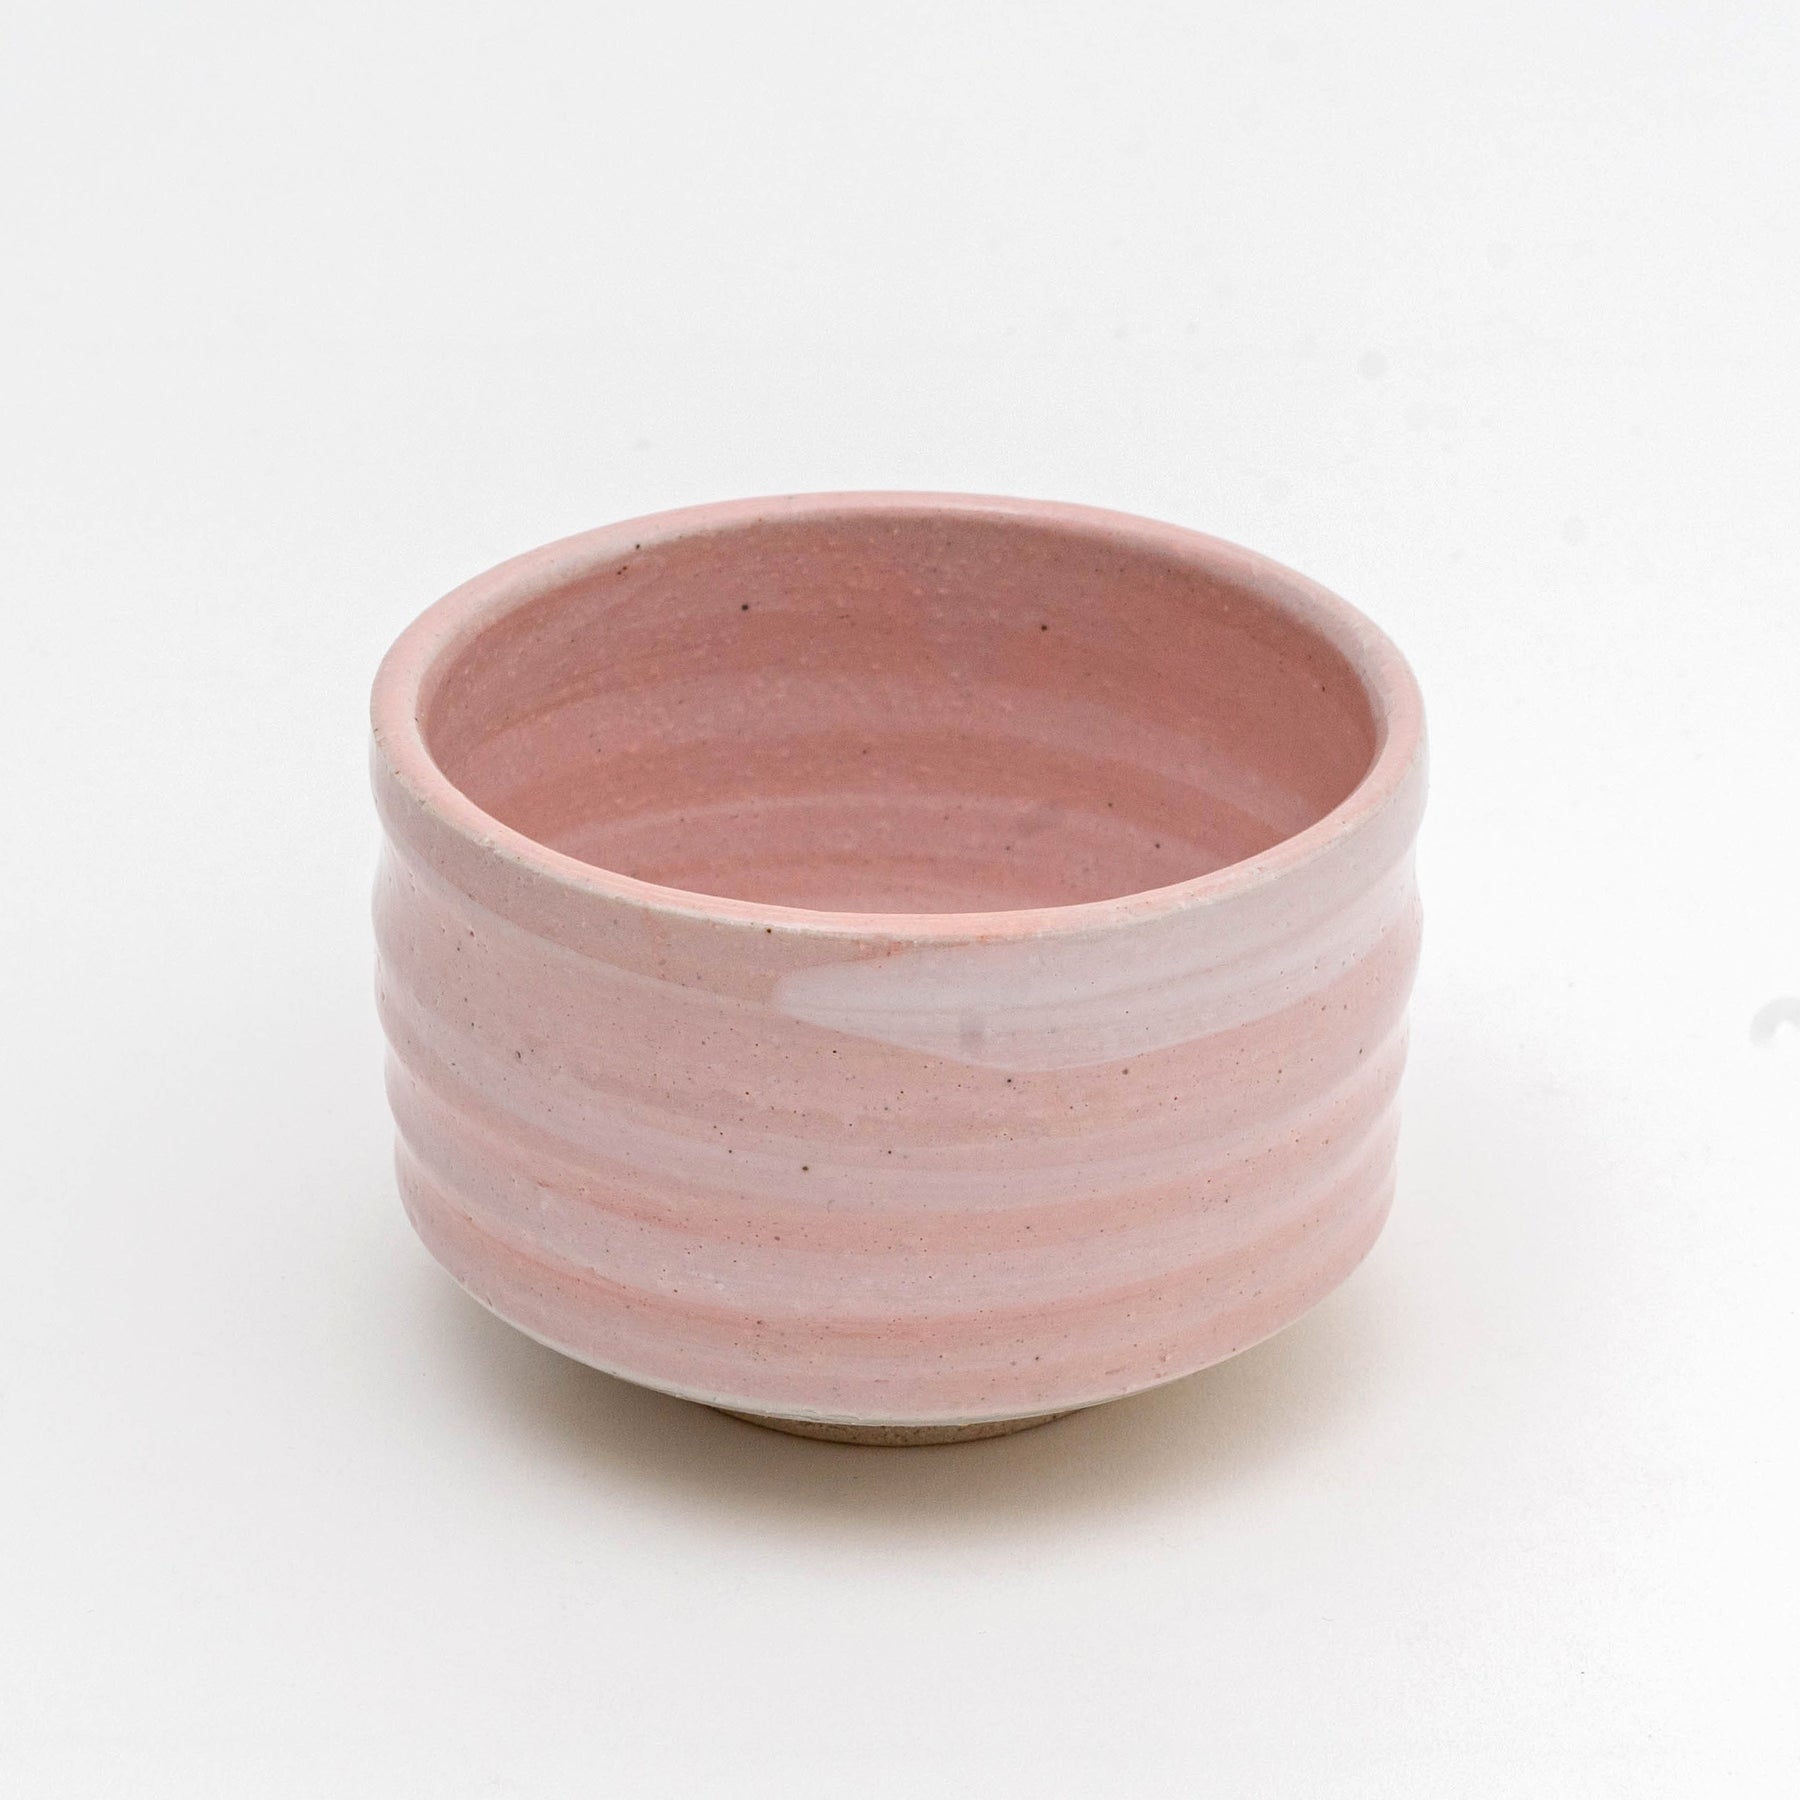 Ceramic glossy pink matcha kit – Parinmi